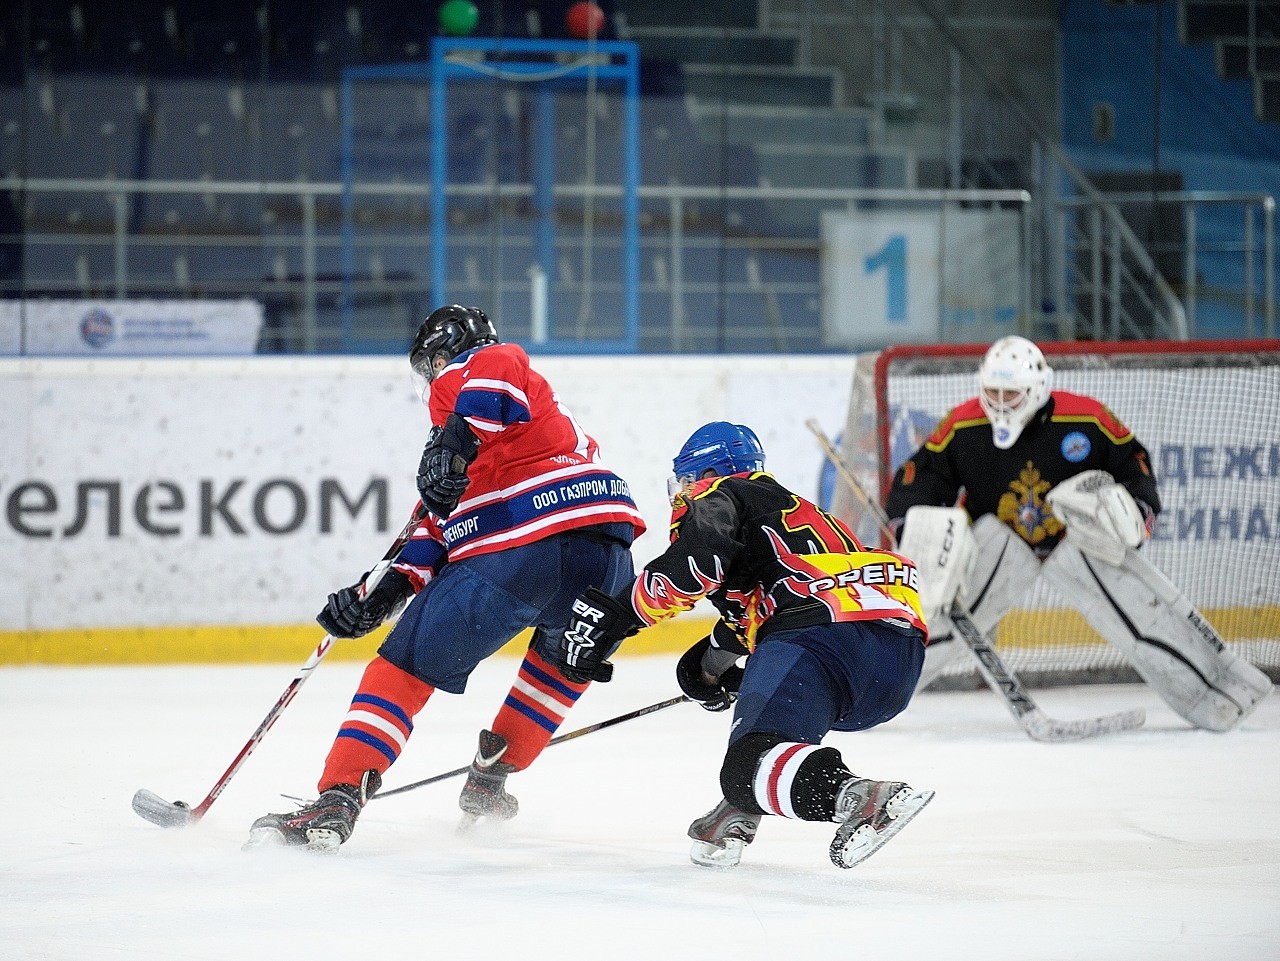 Чемпионата города Оренбурга по хоккею. МЧС - ГПЗ